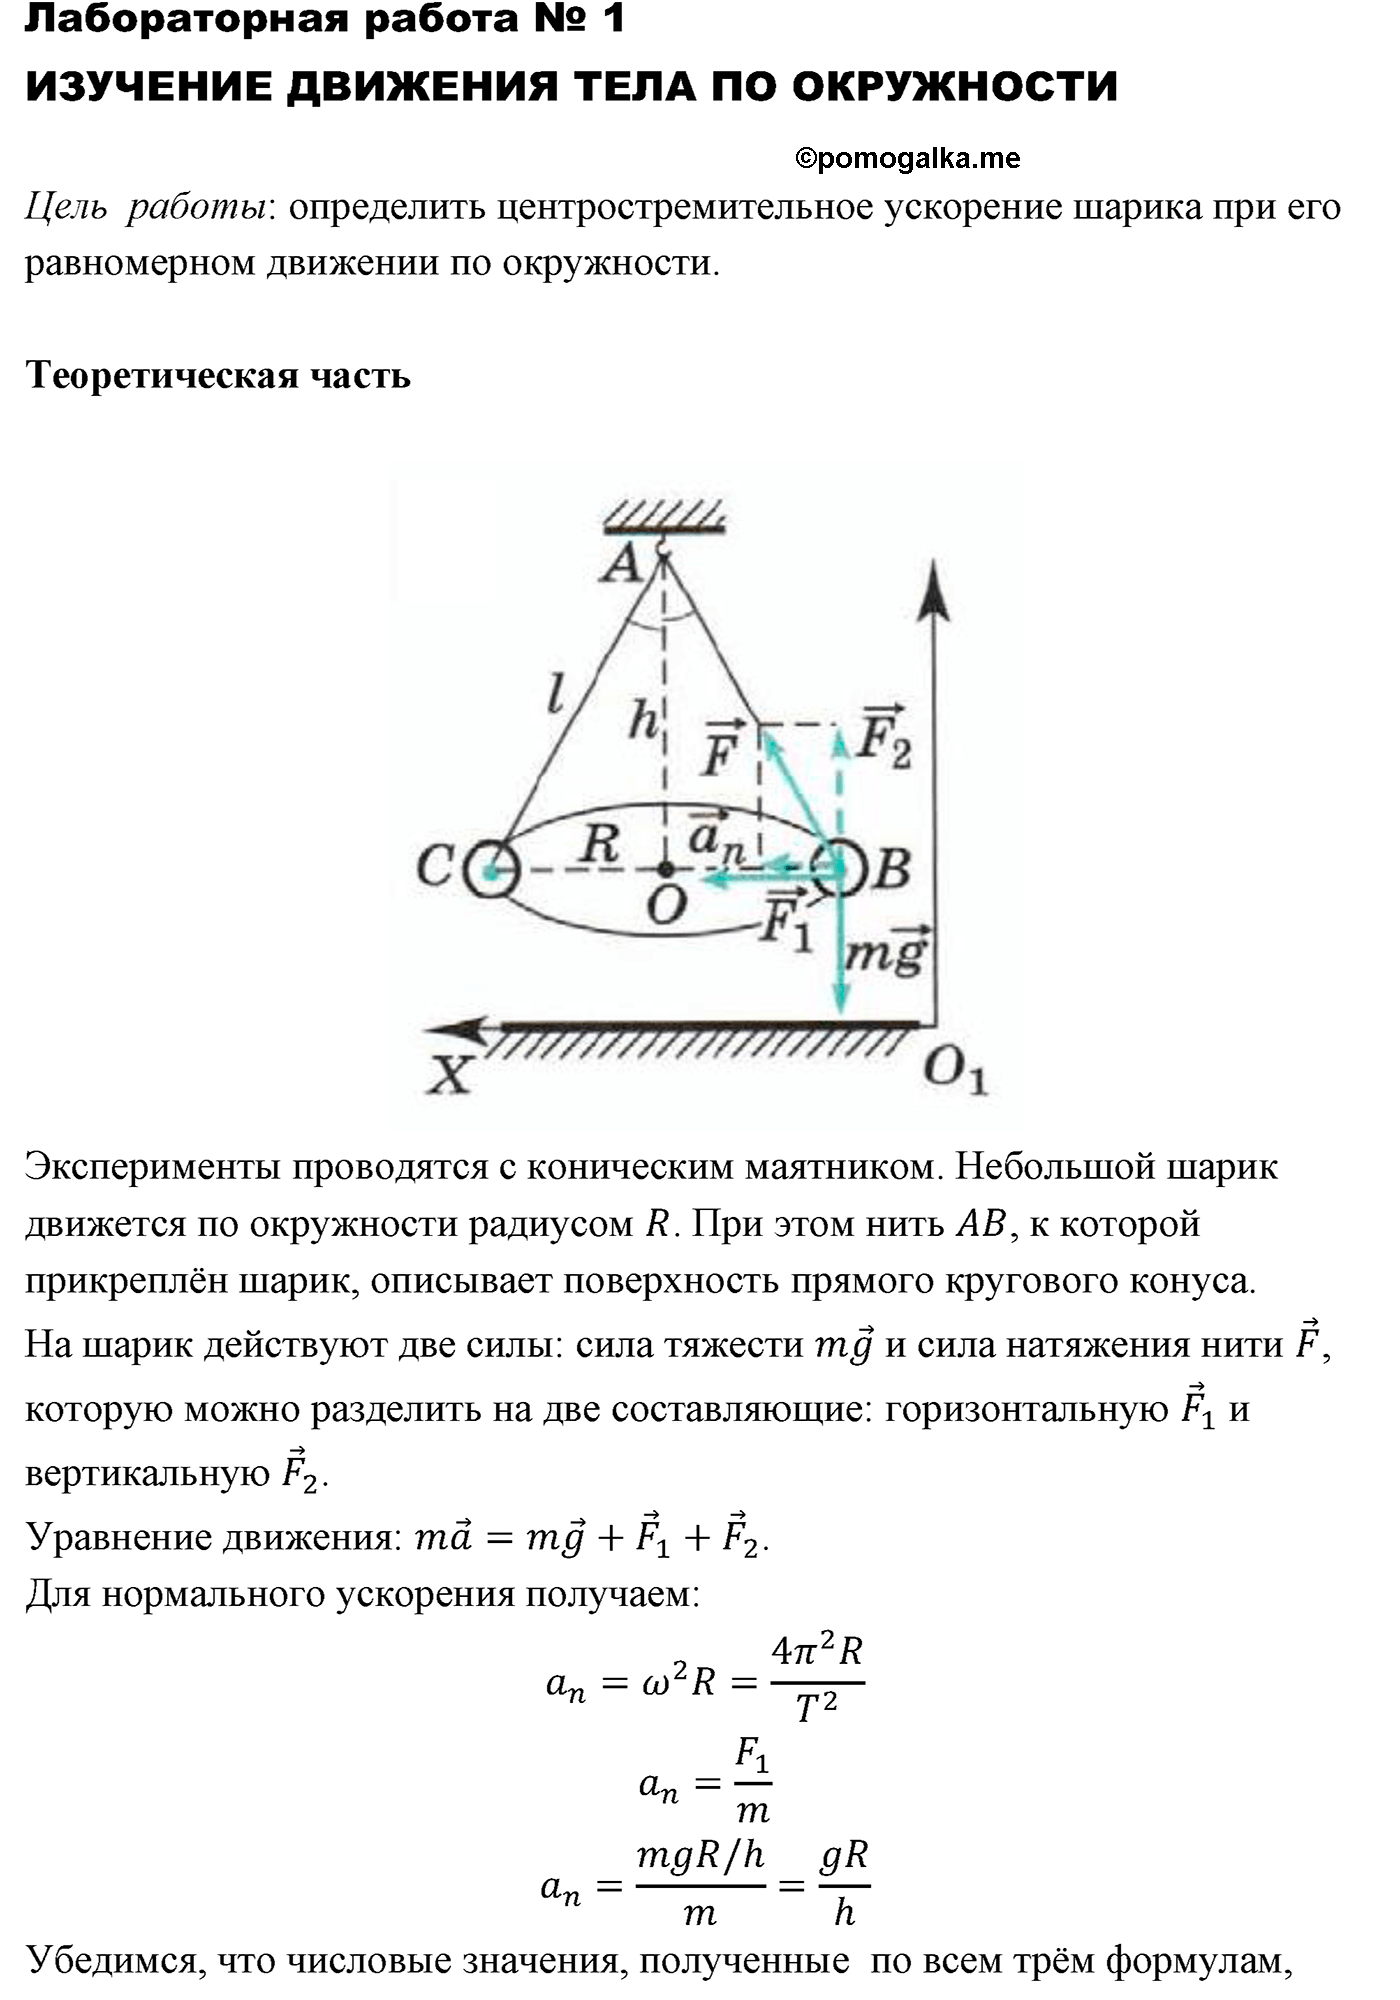 лабораторная работа №1 физика 10 класс Микишев